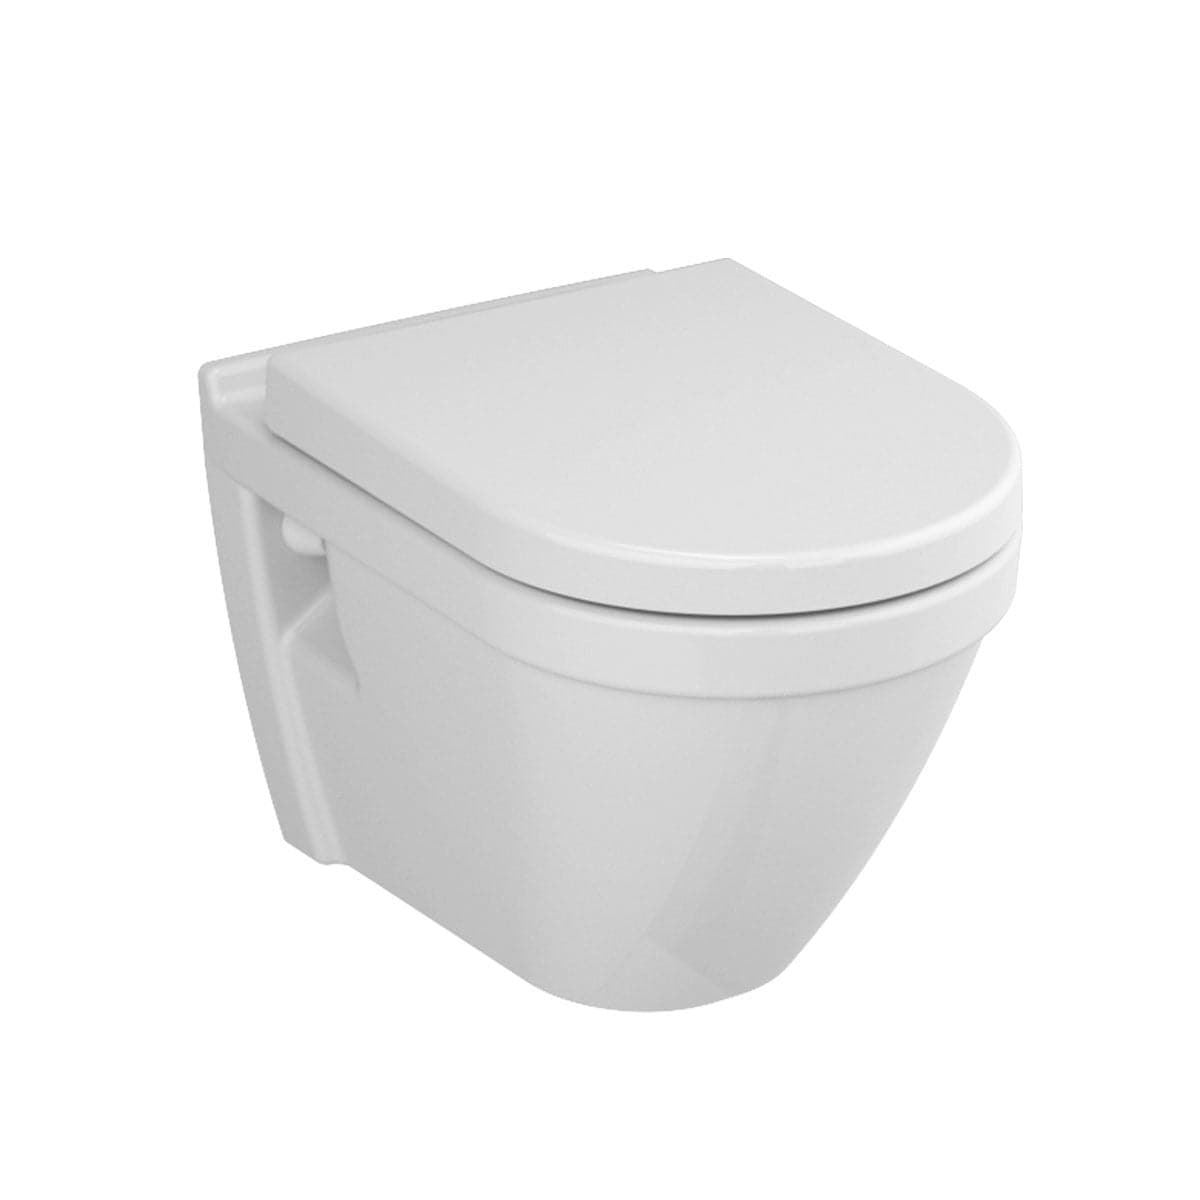 VitrA S50 spülrandlos Wand-Dusch-WC mit VitrAflush 2.0 inkl. Hygiene Beschichtung